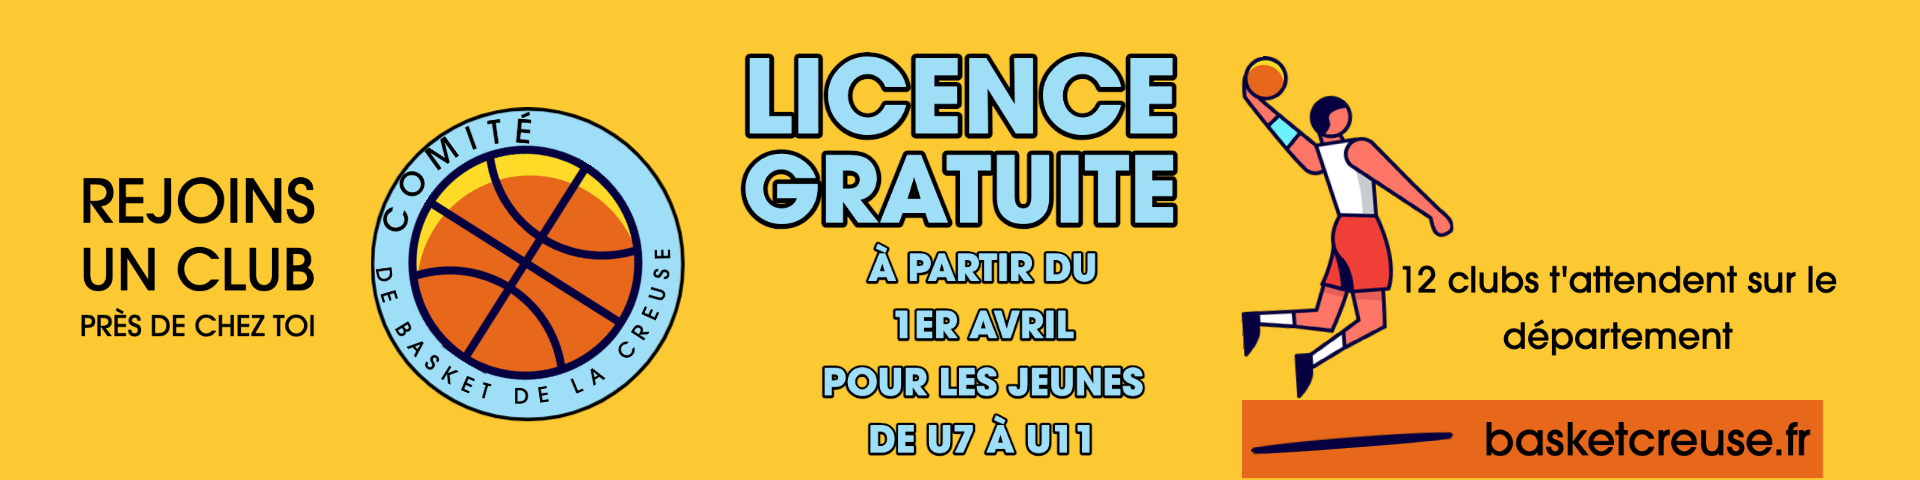 Licences gratuites